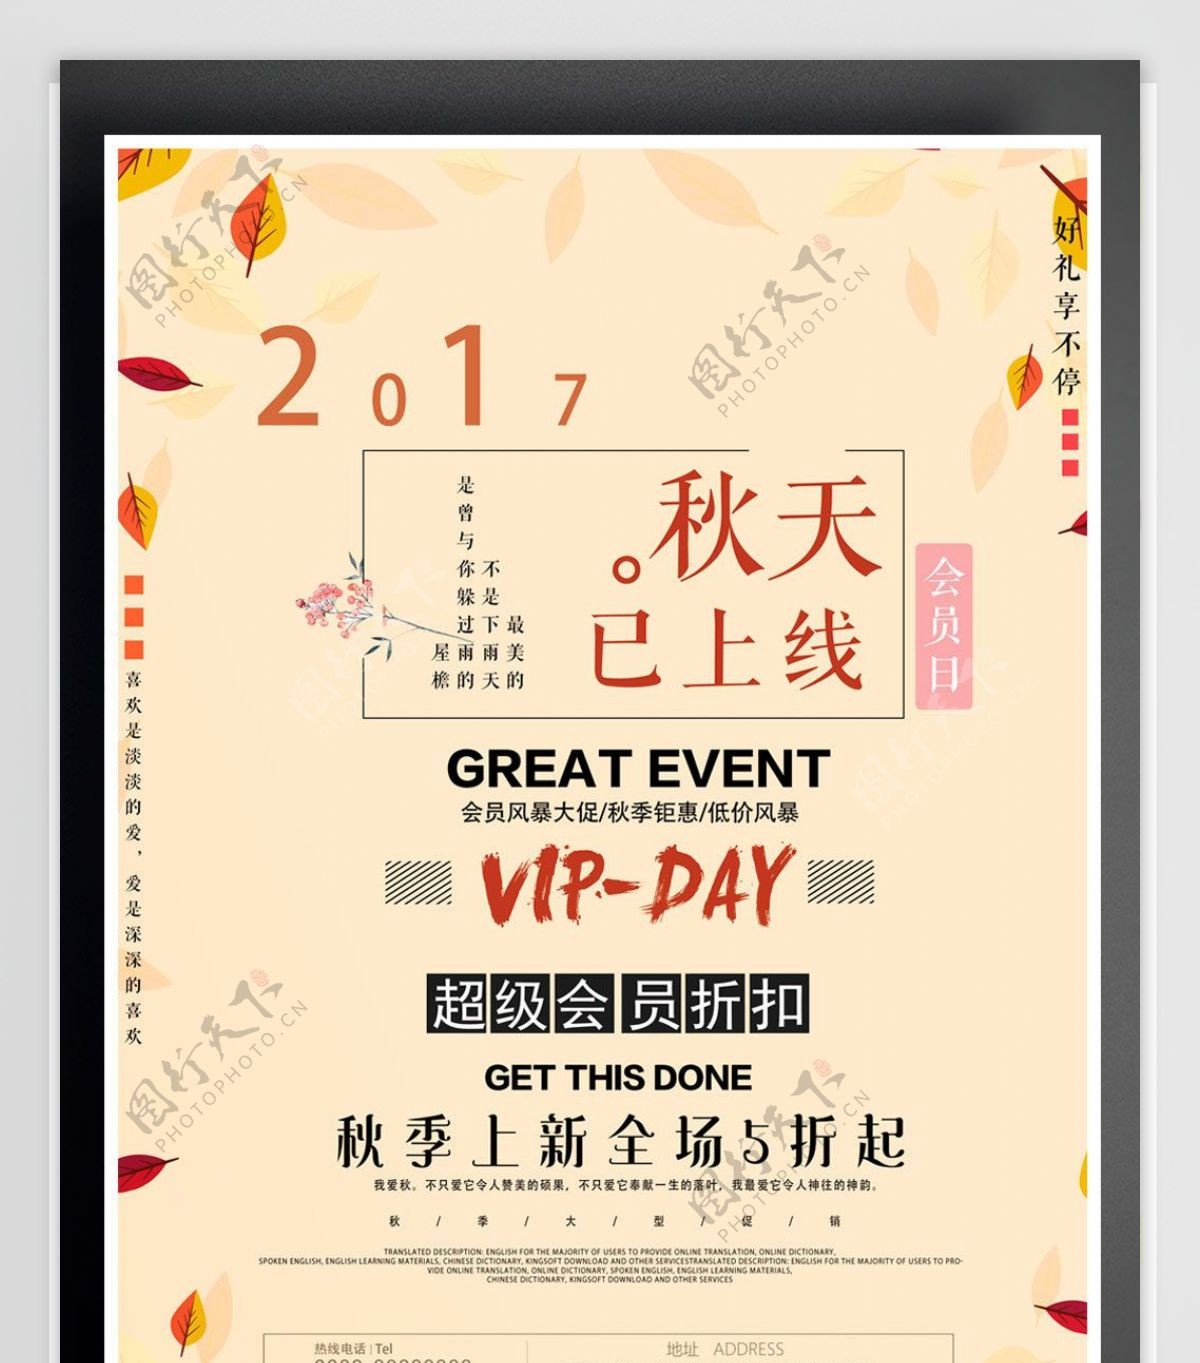 2017简约清新秋季会员日宣传海报模版